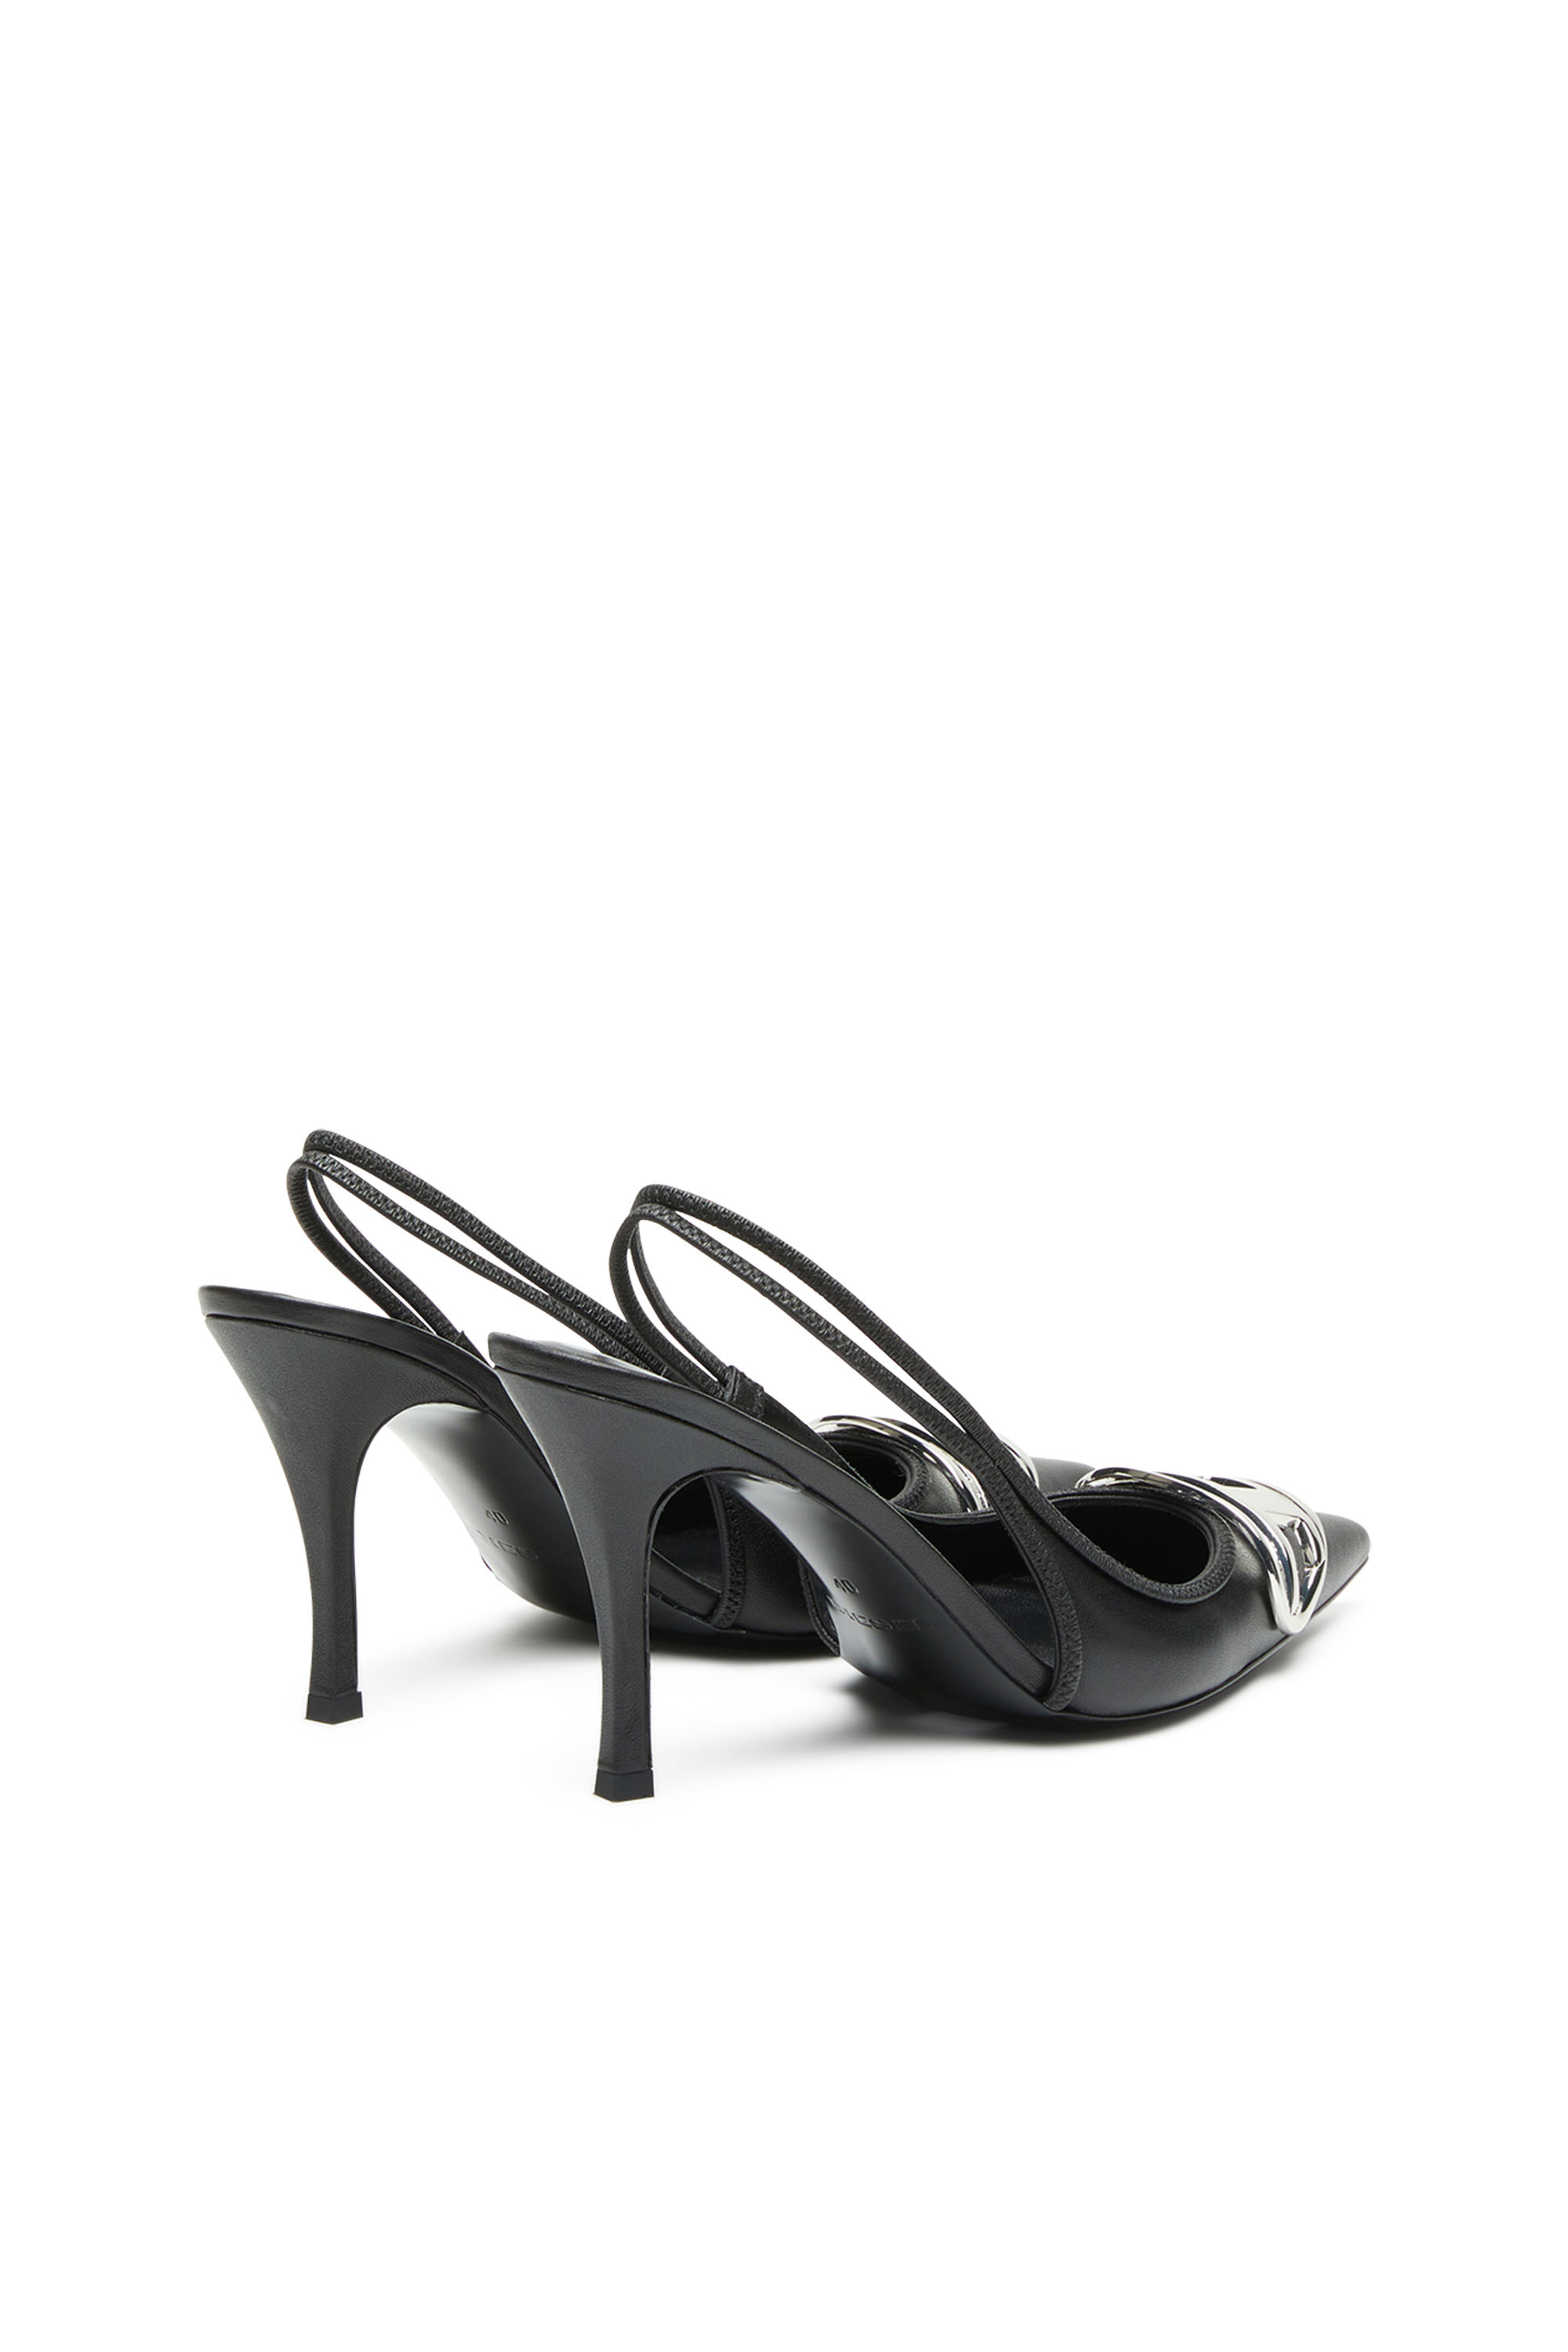 D-western heeled mules de DIESEL de color Negro Mujer Zapatos de Tacones de Tacones altos y bajos 